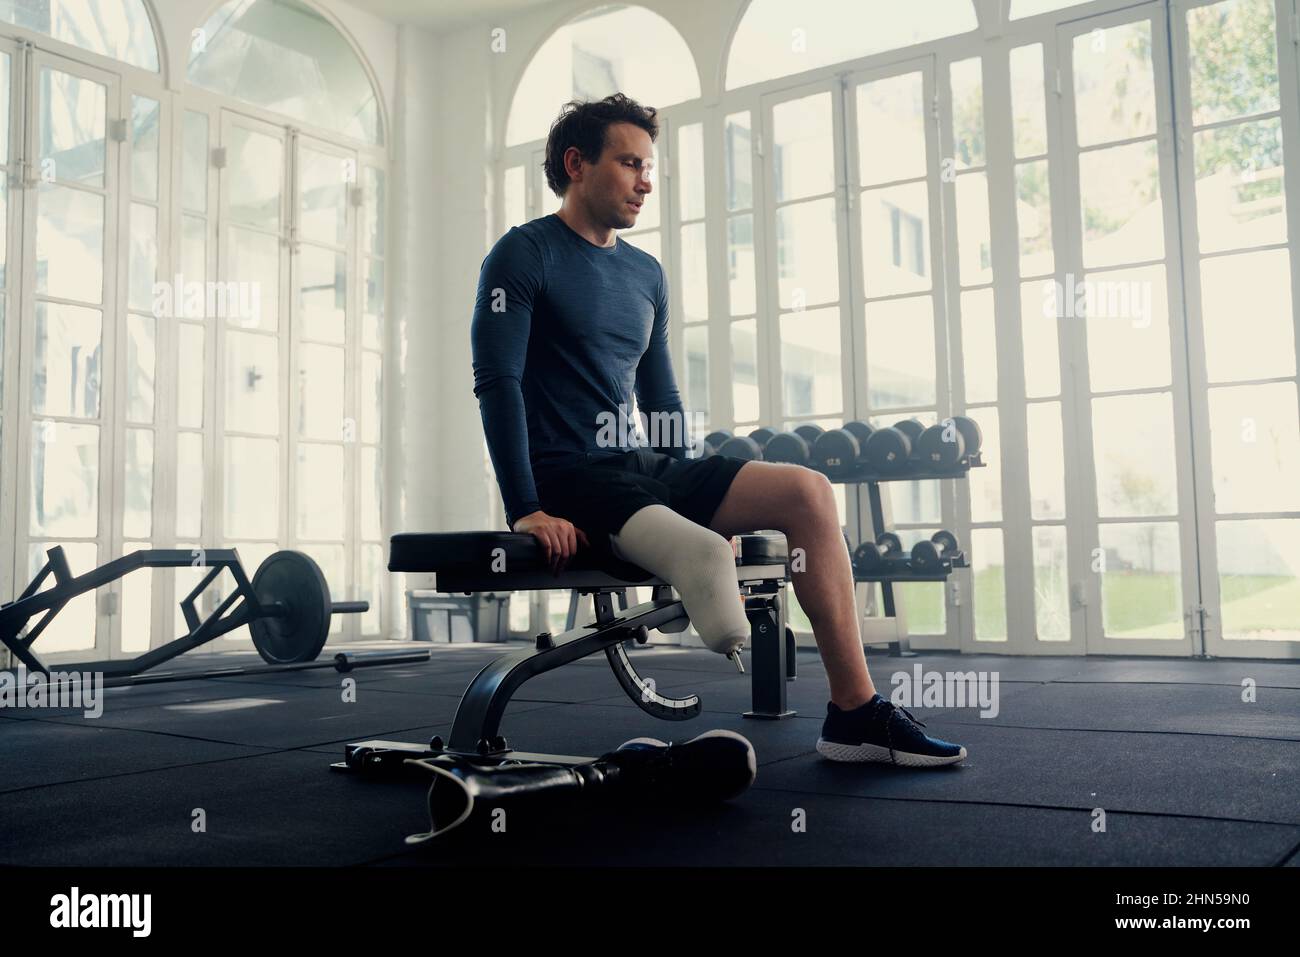 Homme avec une jambe prothétique assis sur un banc de gym . Il se prépare mentalement à sa séance de remise en forme Banque D'Images